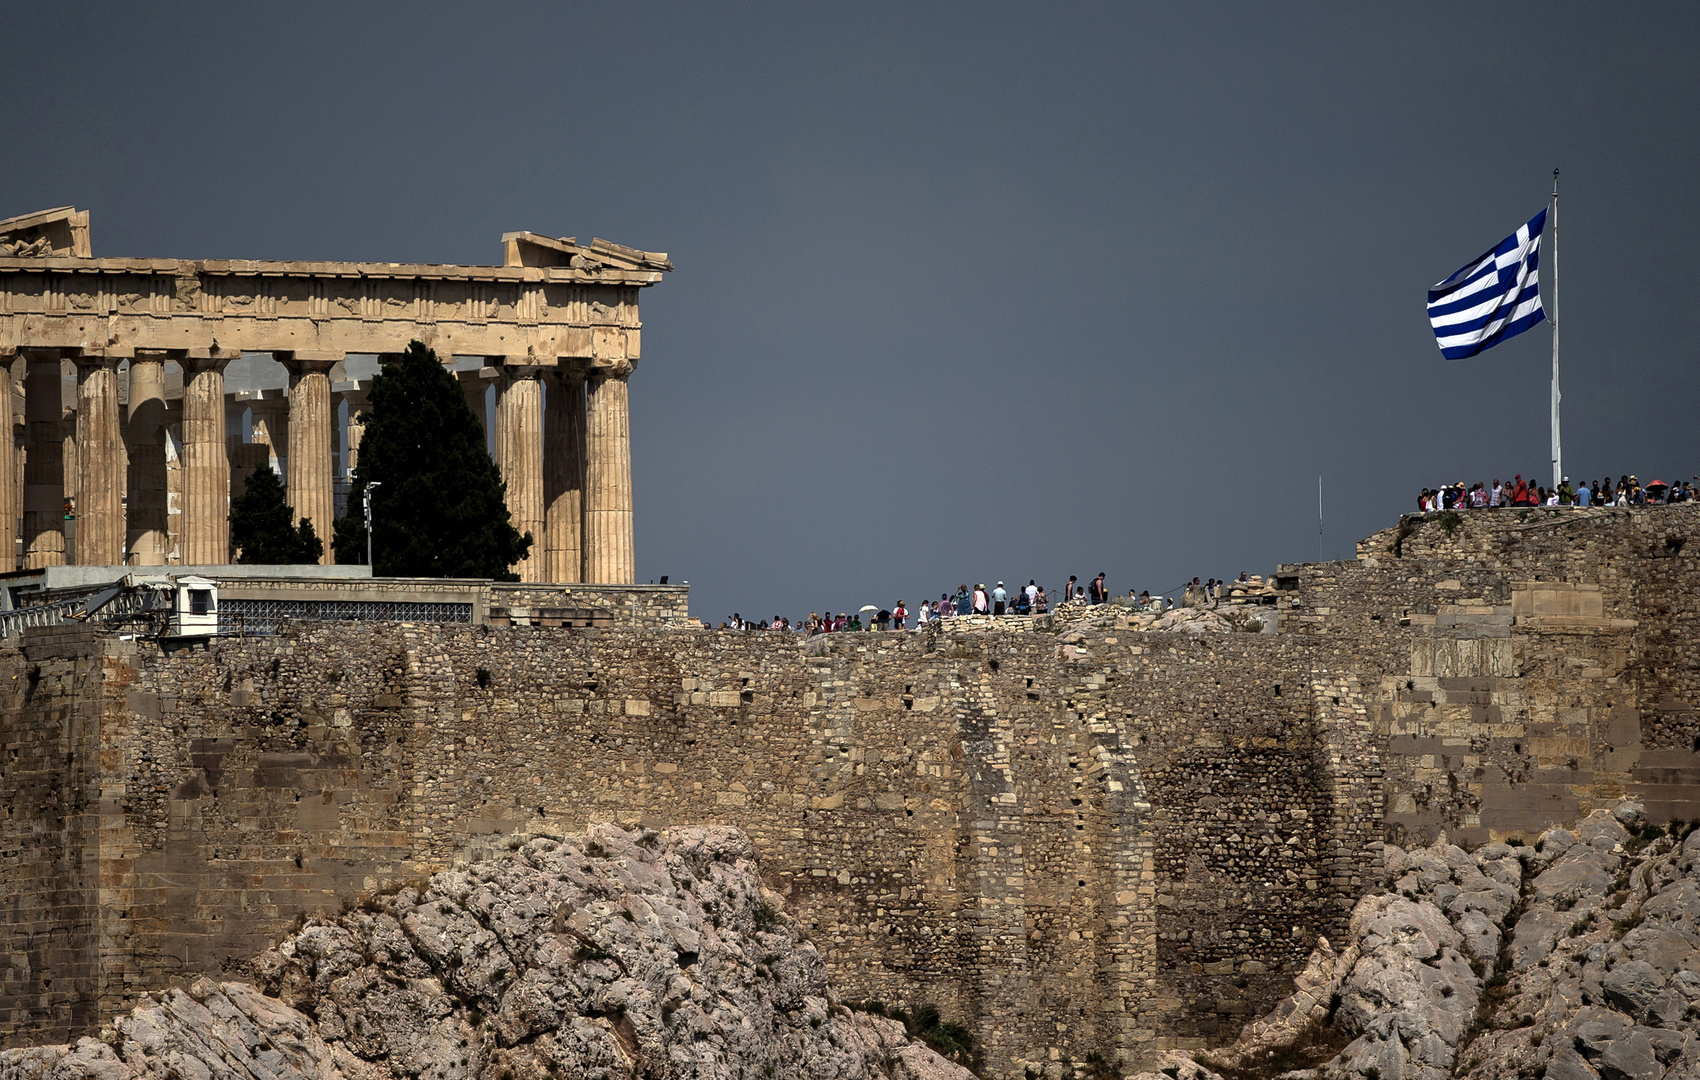 اليونان تدين قرار تركيا تمديد التنقيب في شرق المتوسط وتعلن عن أول رد لها